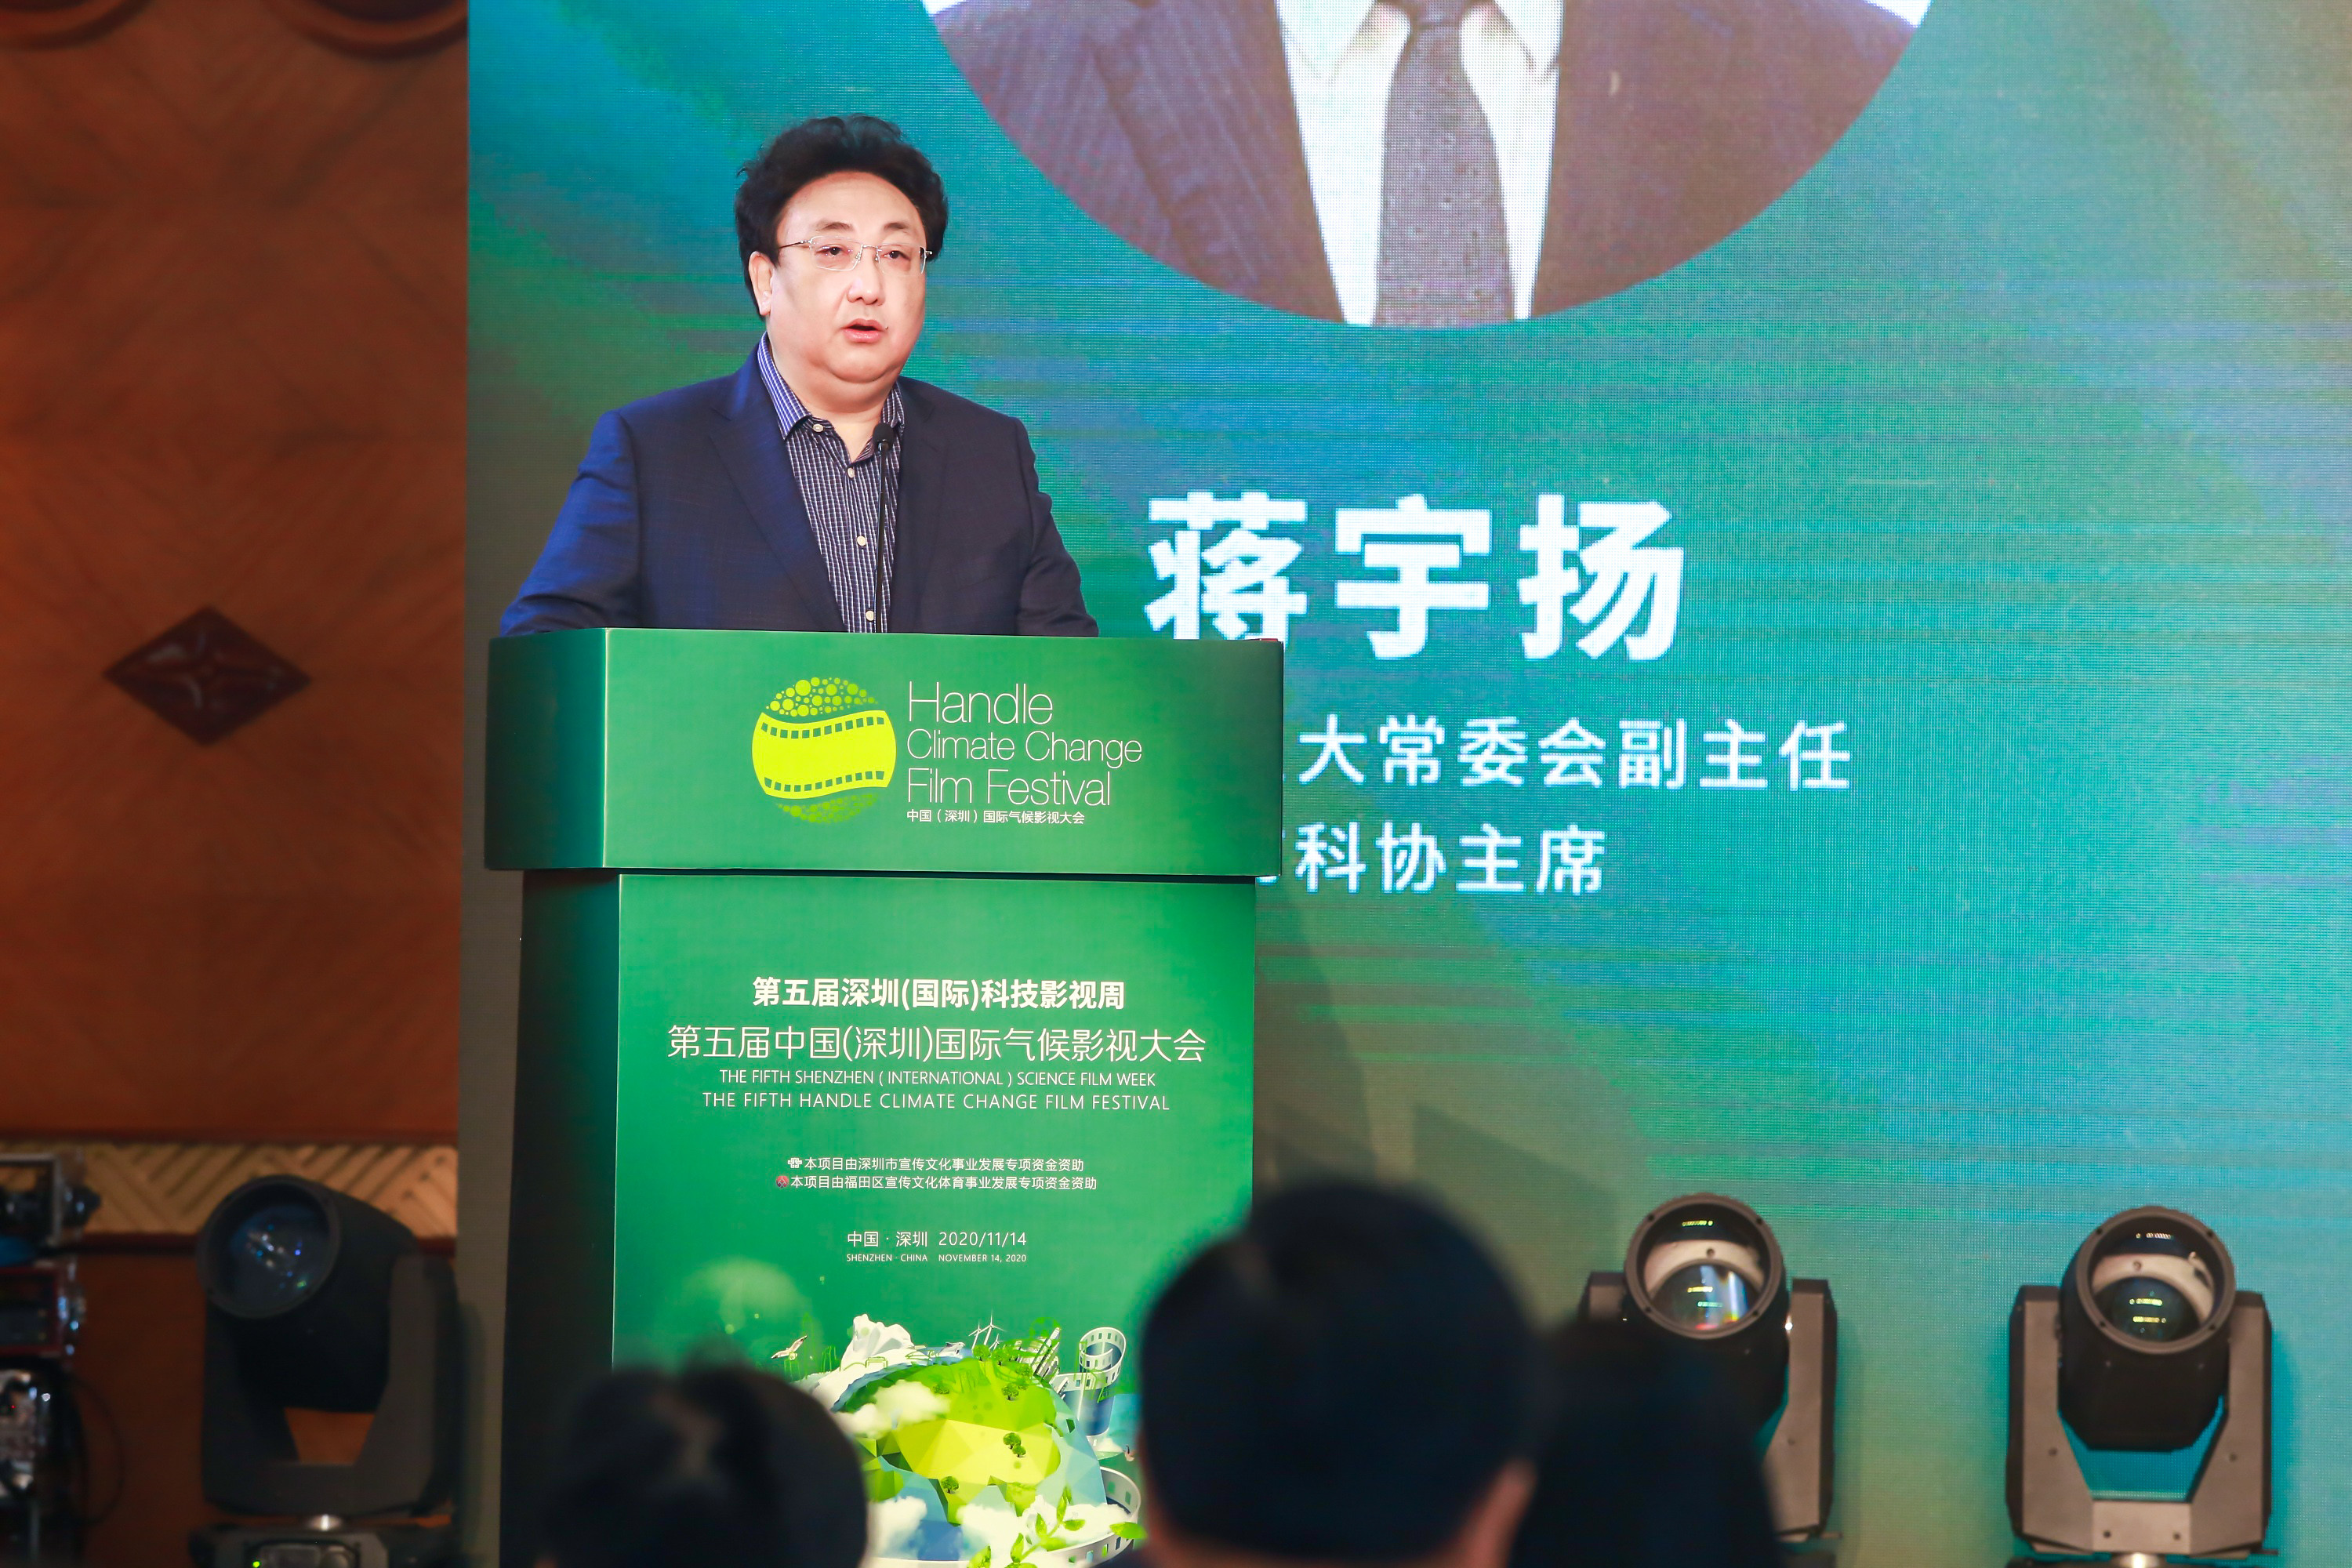 深圳市人大常委会副主任、市科协主席蒋宇扬致辞：国际气候影视大会是参与应对气候变化行动的实践创新